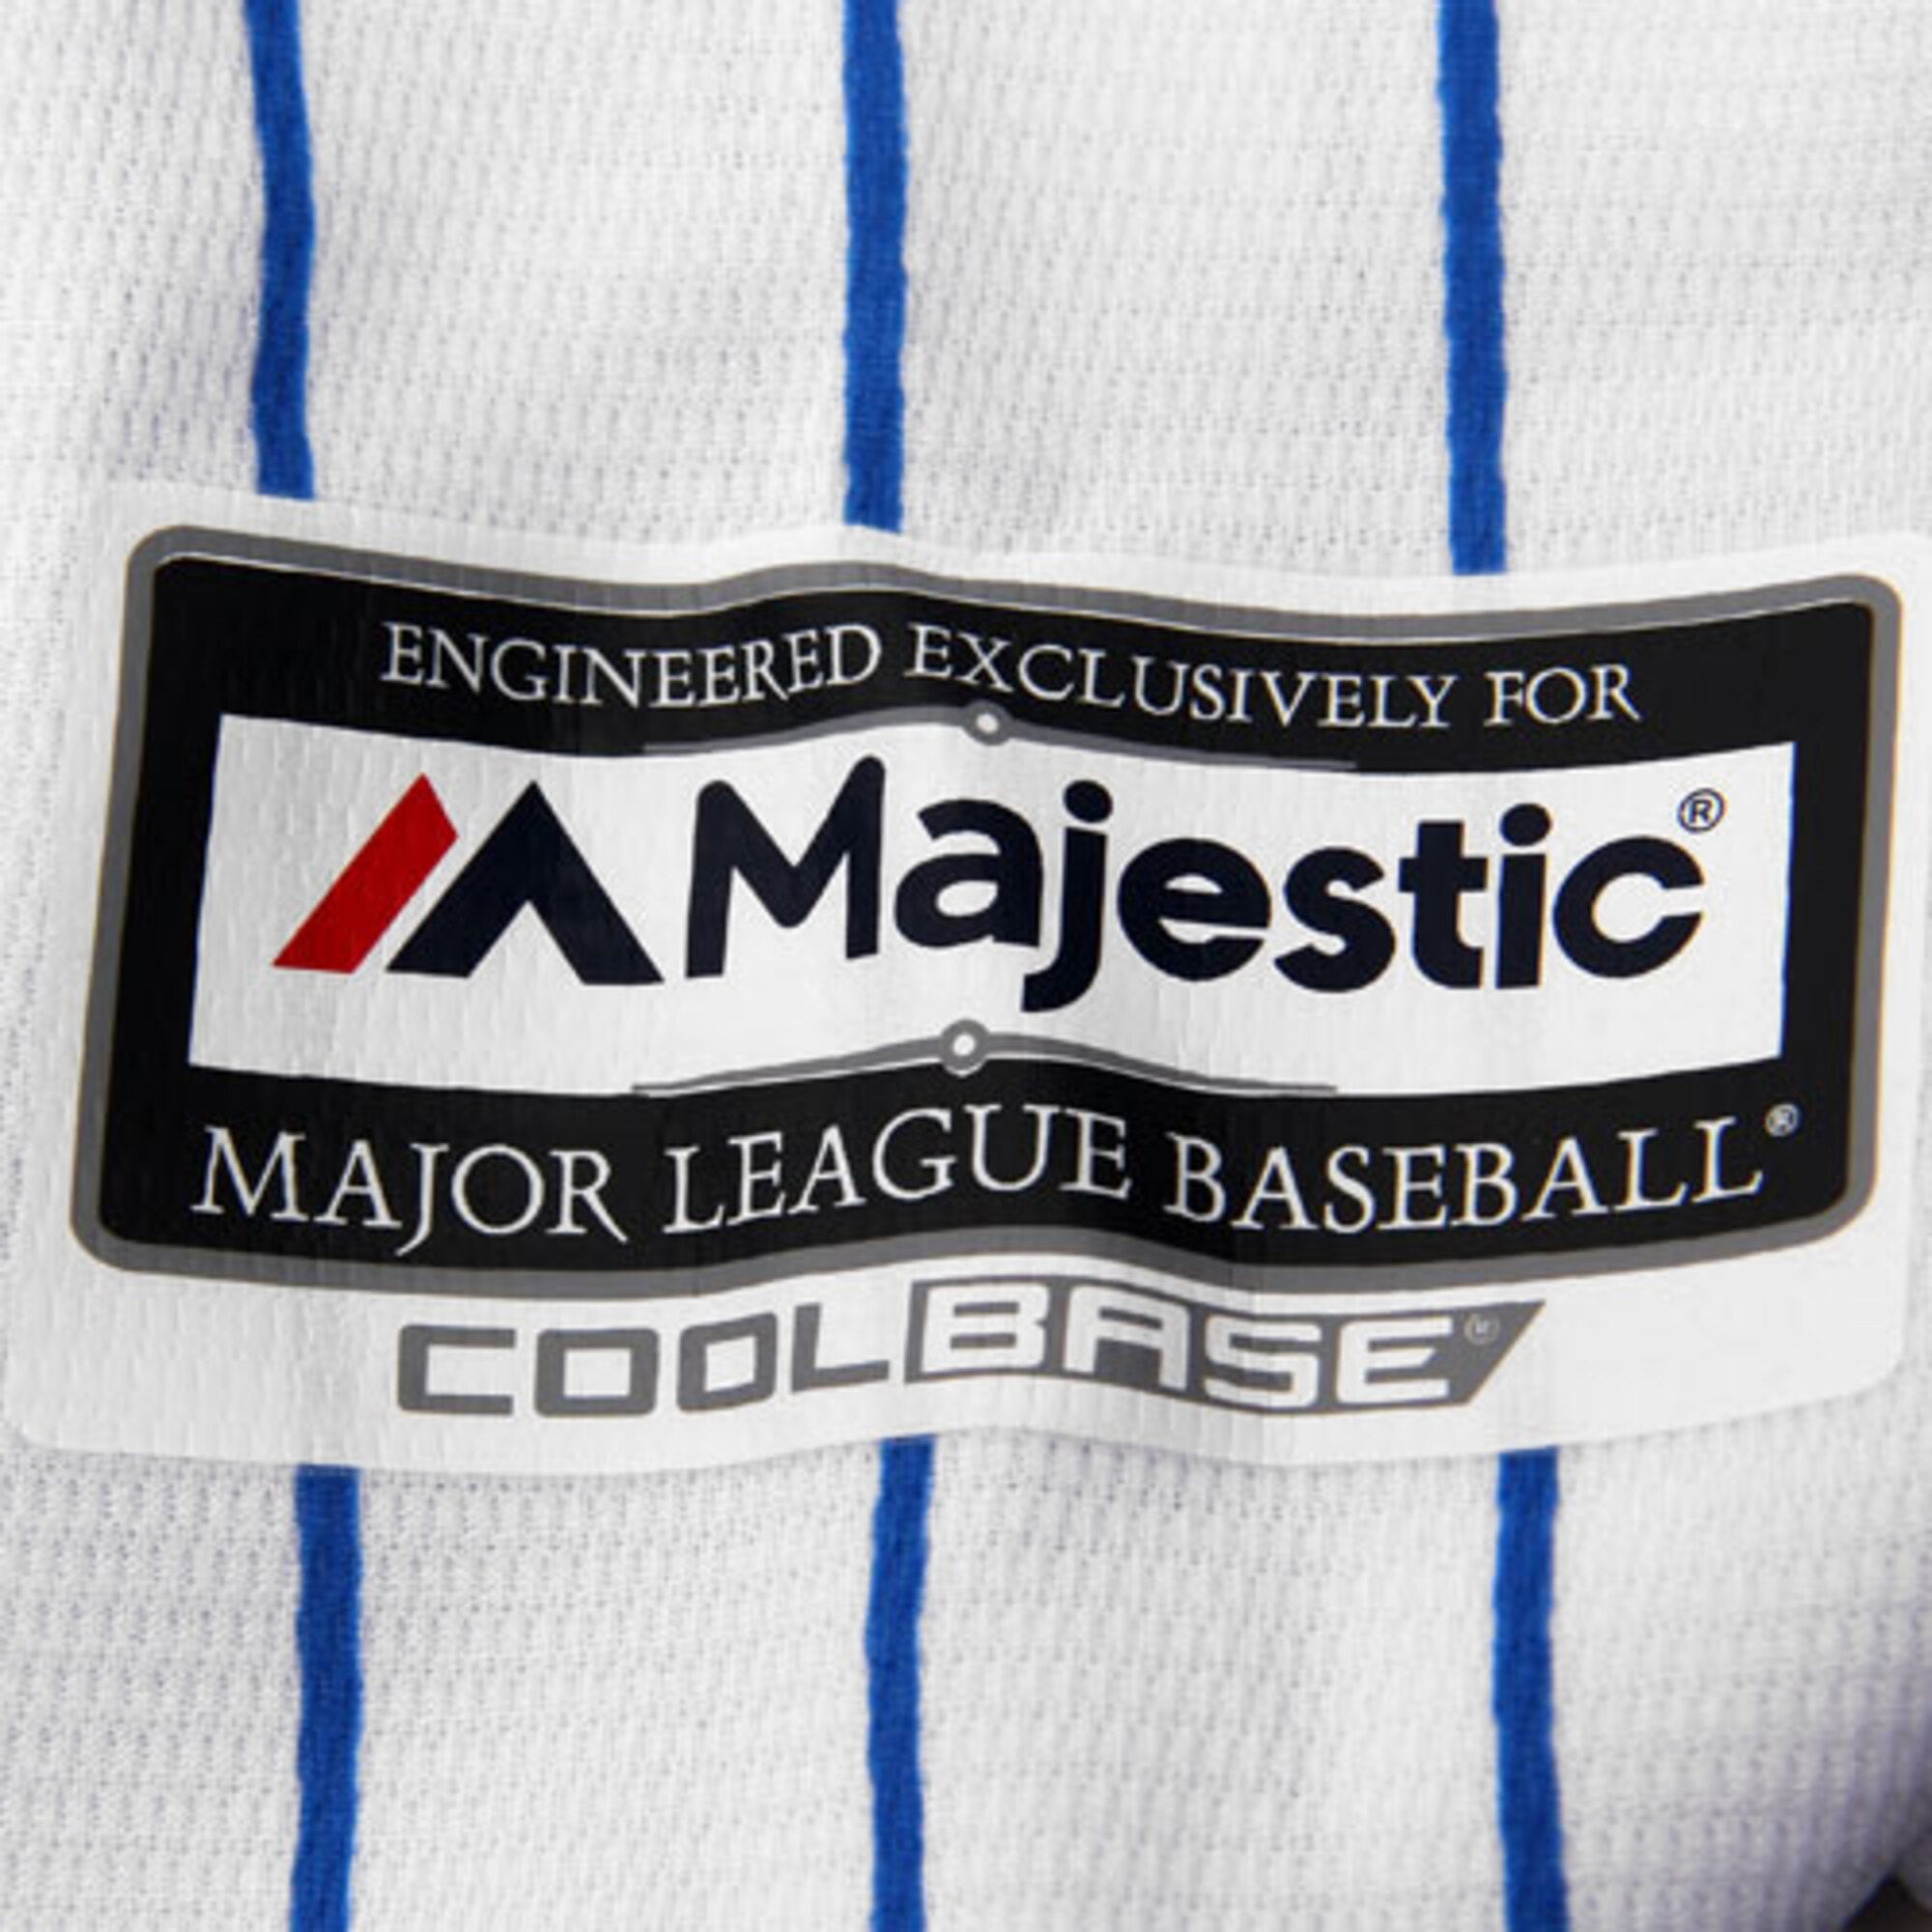 Mlb Florida Marlins Pinstriped Fabric Baseball Jersey